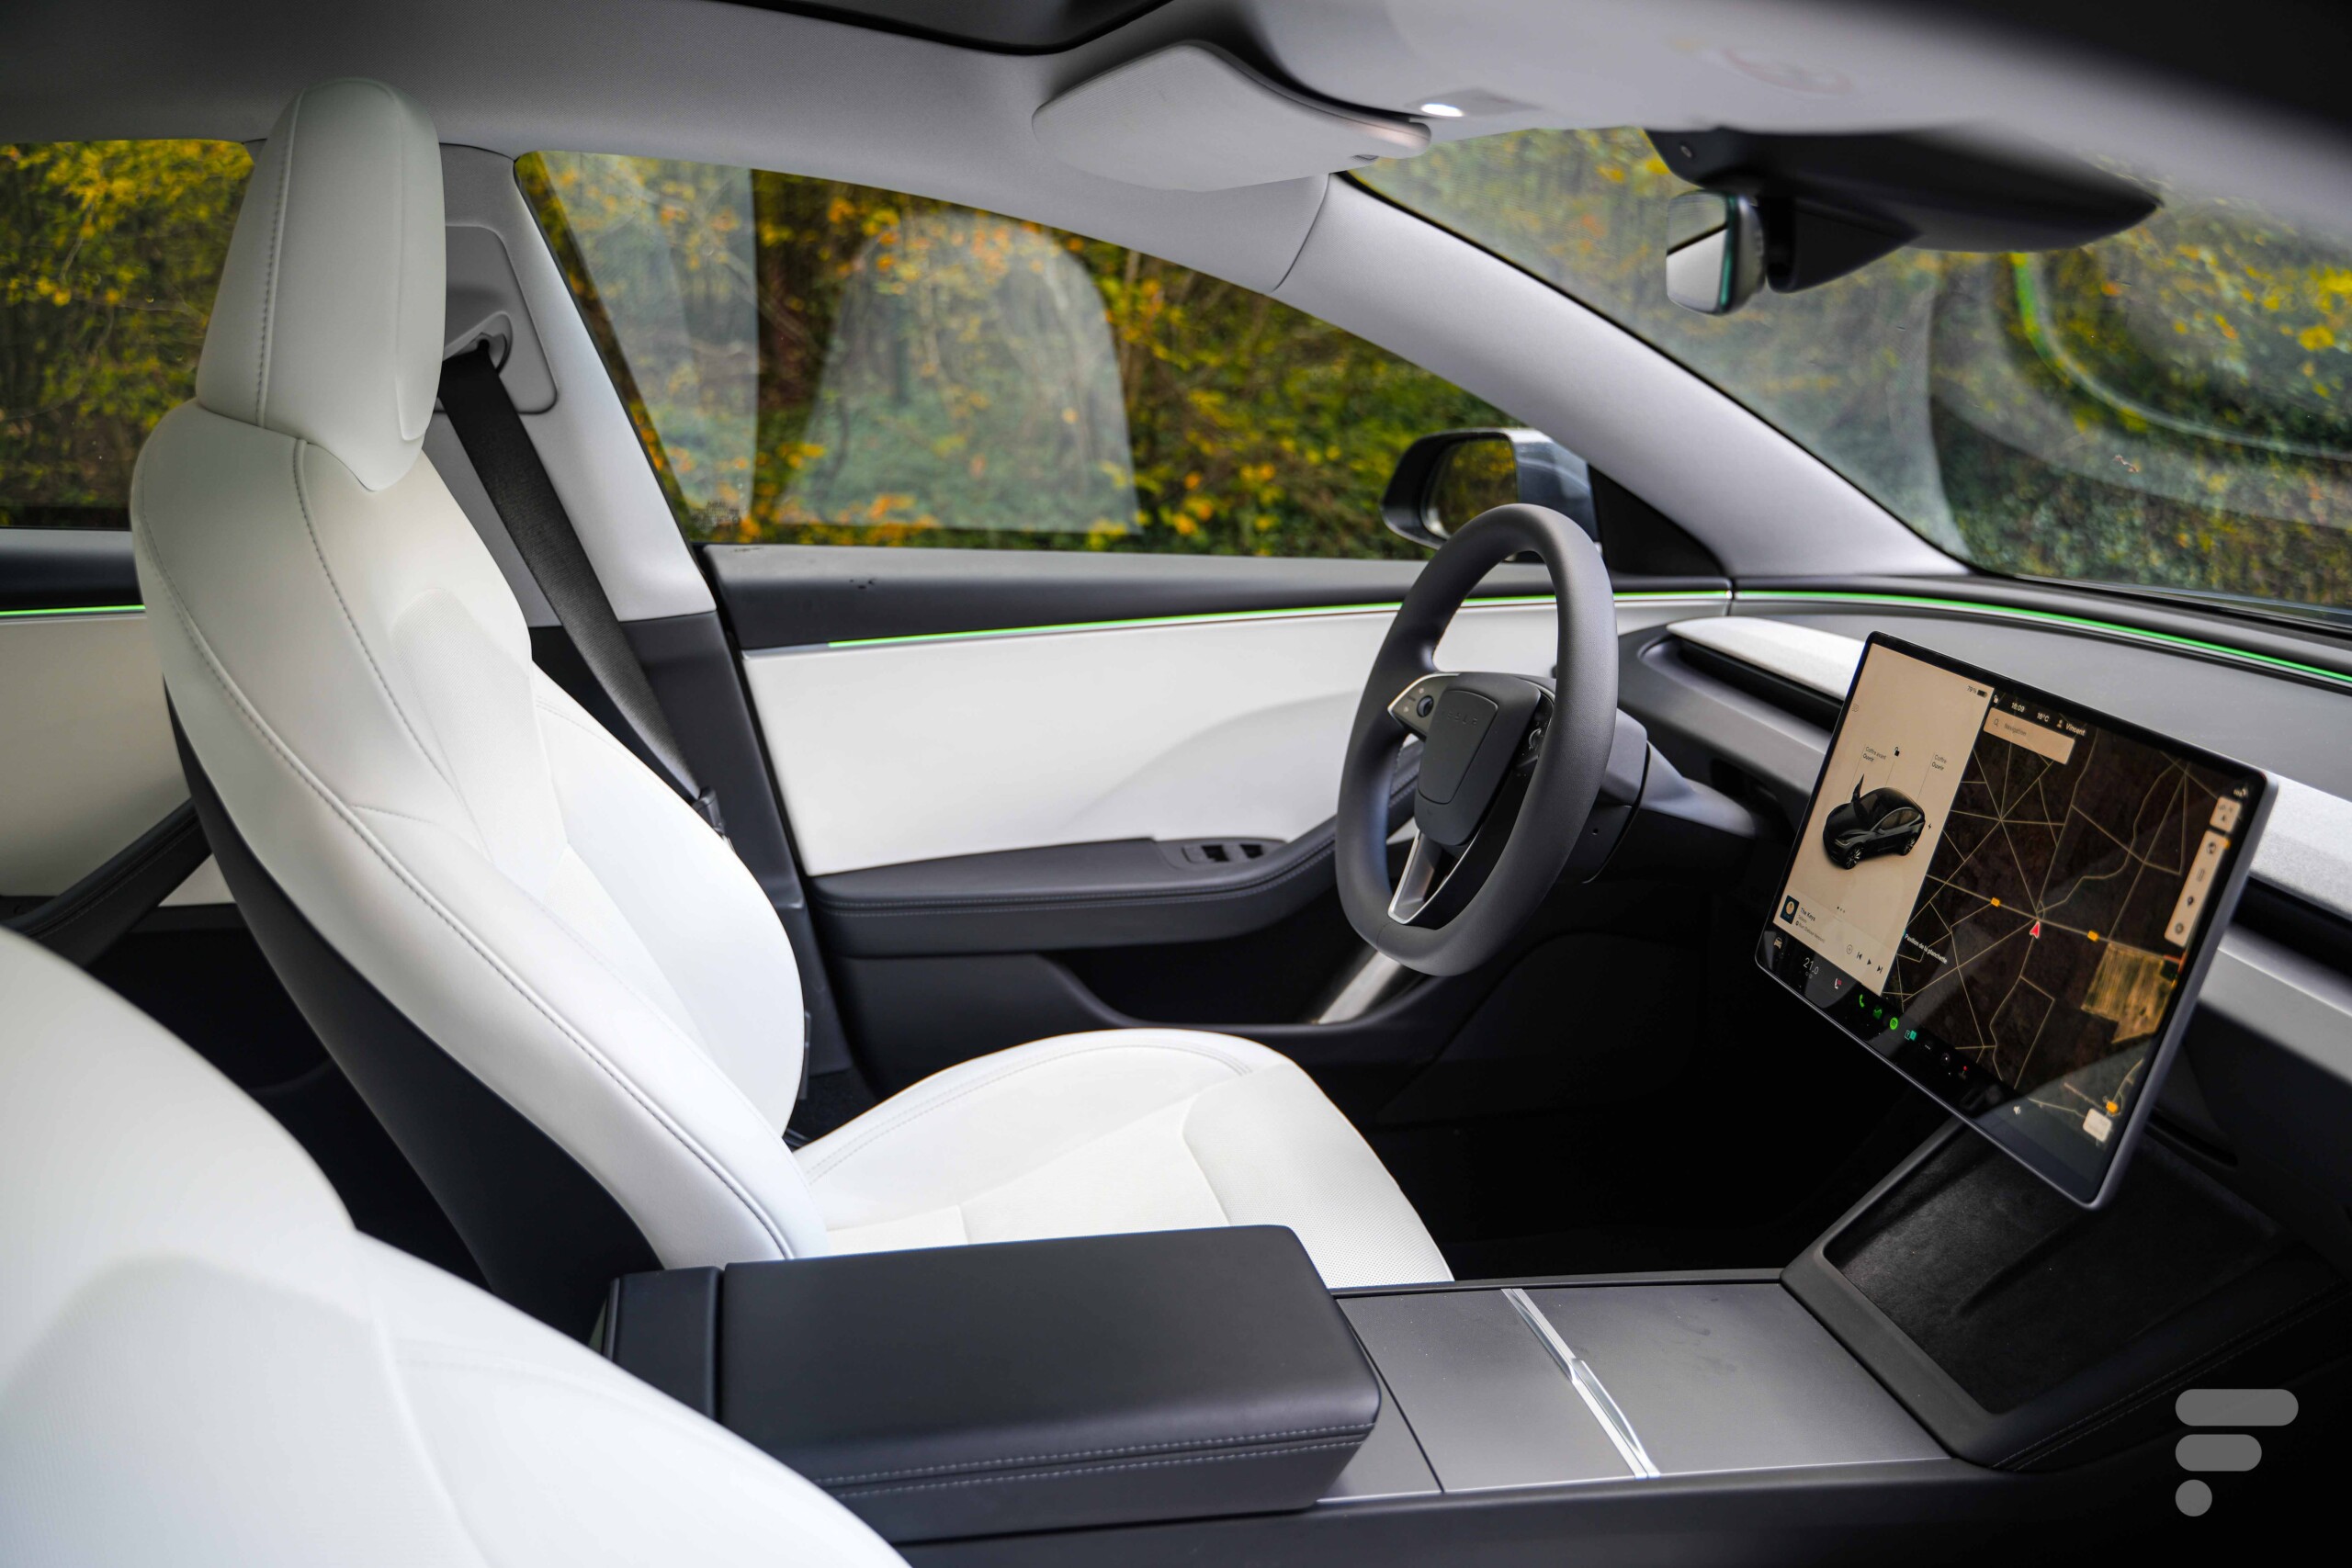 Porte-gobelet de siège arrière facile à installer pour Tesla modèle 3 modèl